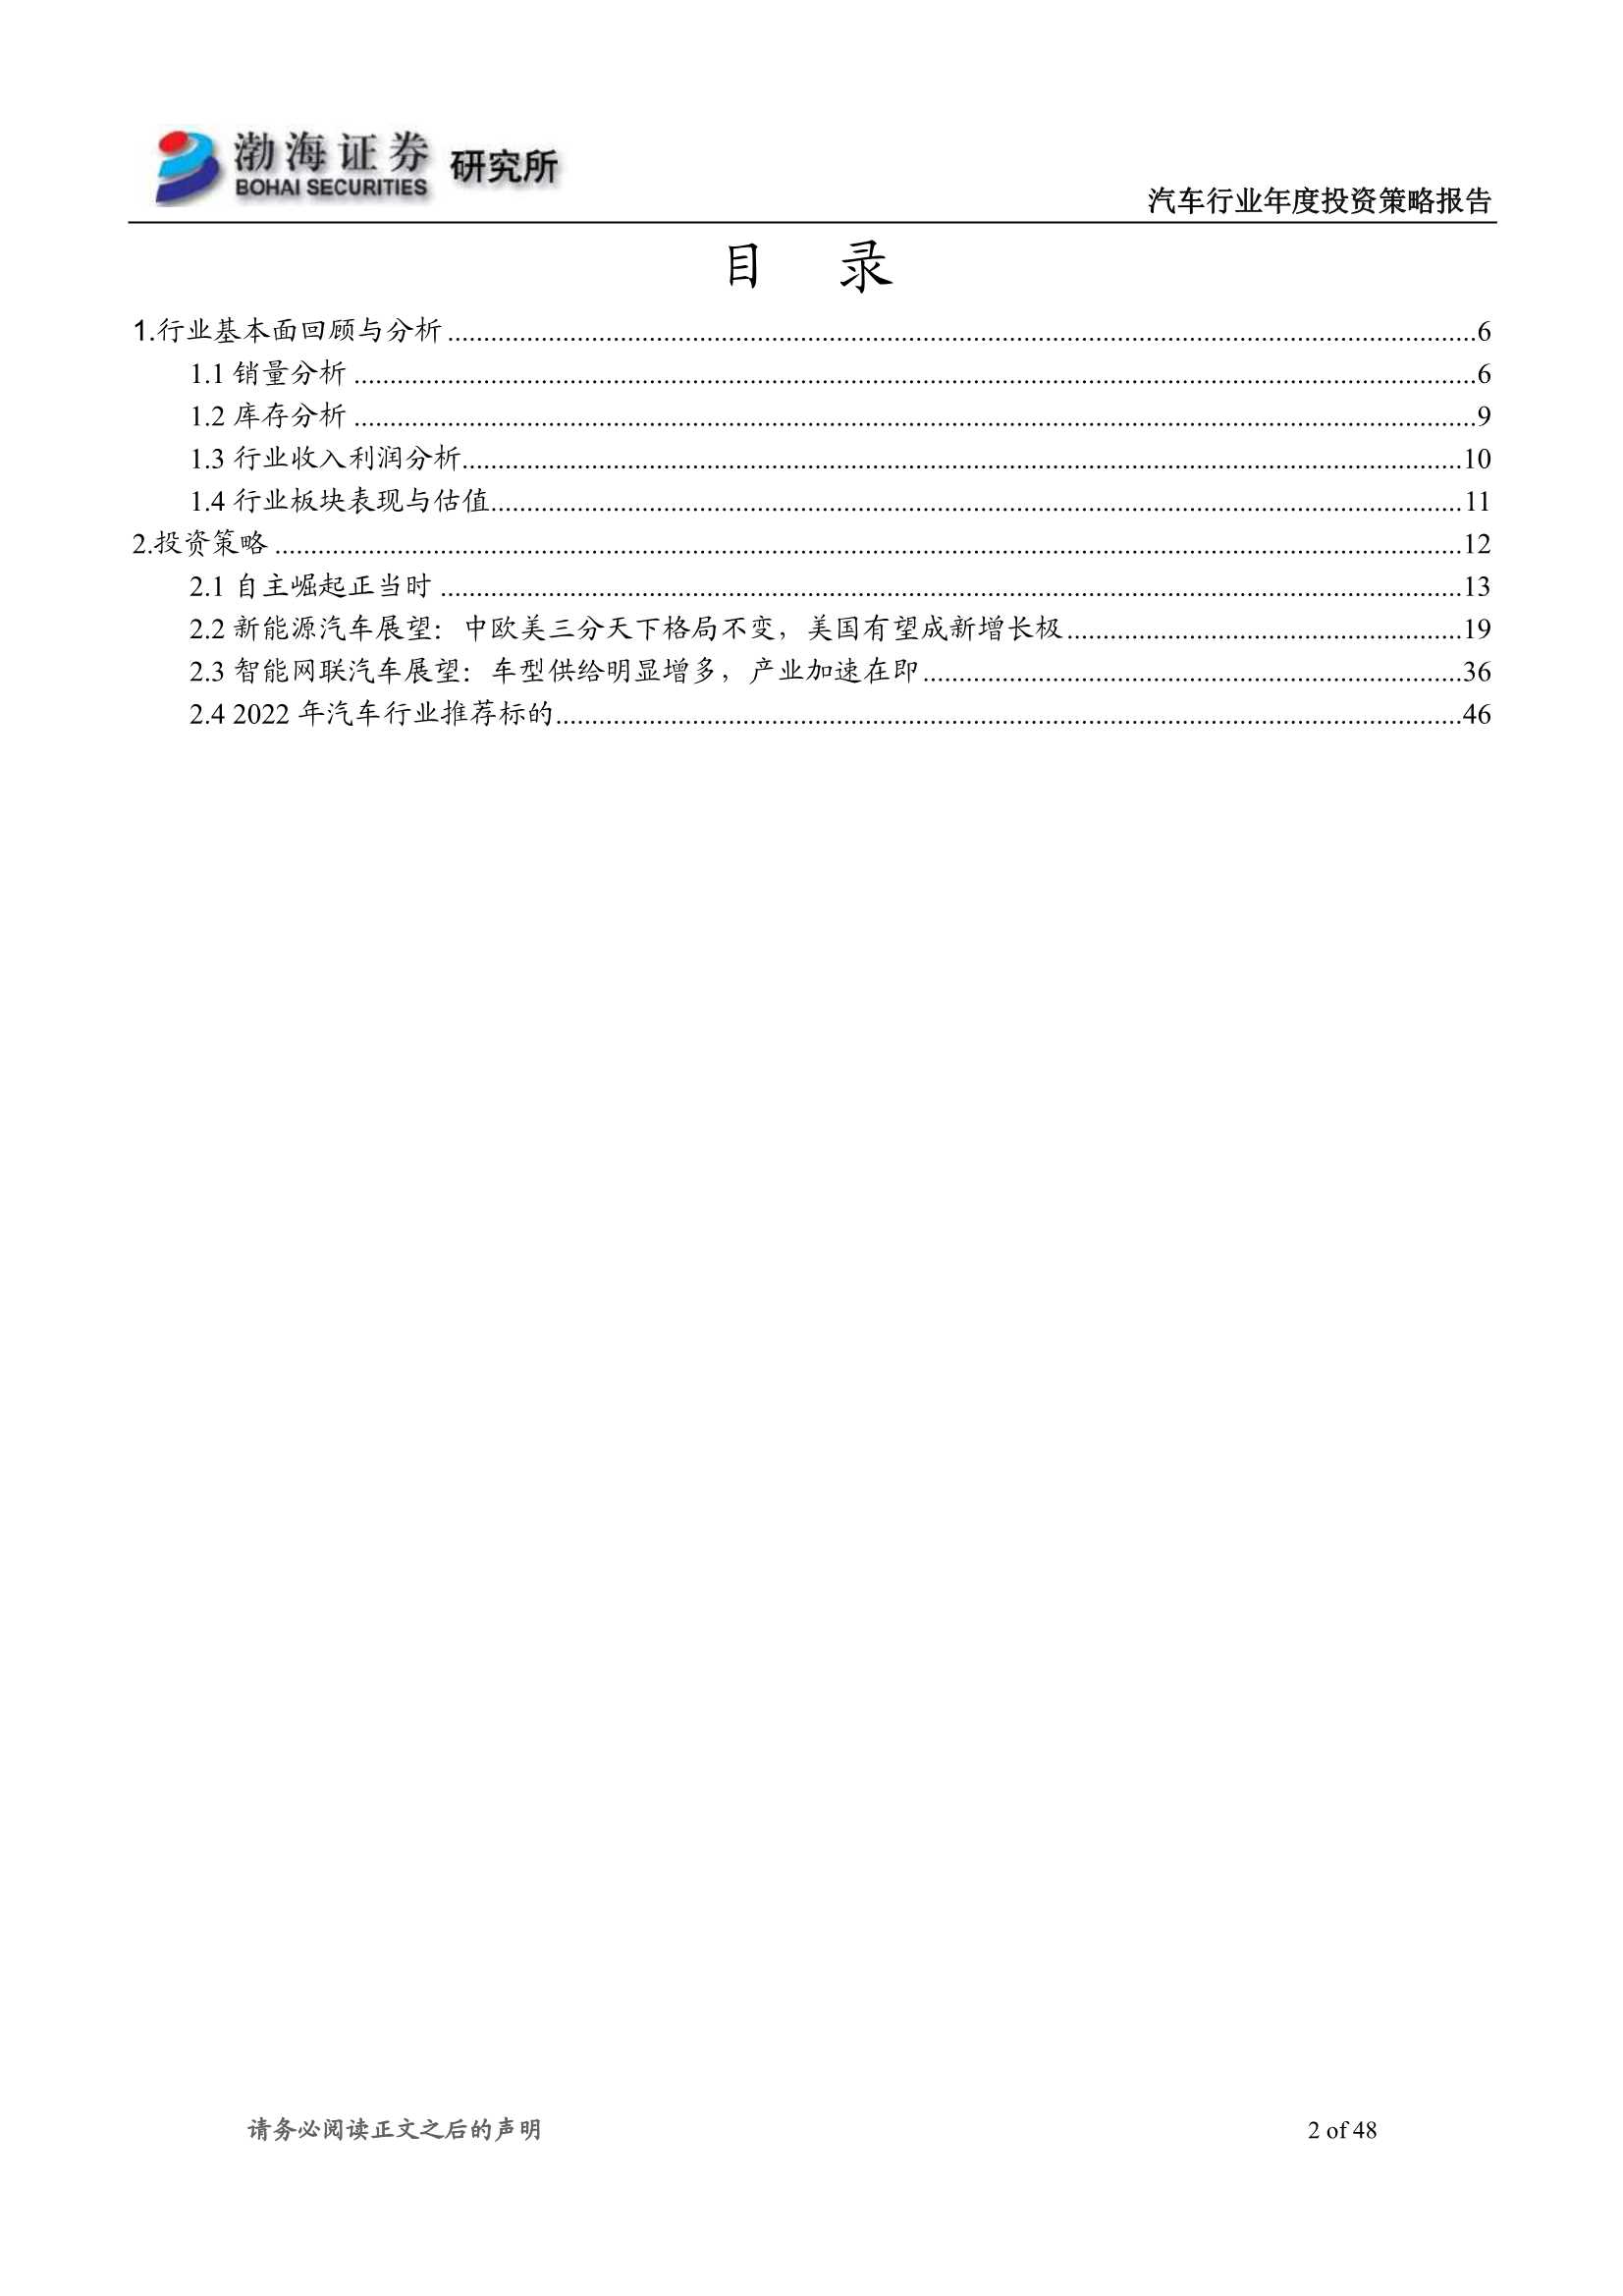 渤海证券-汽车行业2022年投资策略报告：行业复苏可盼，电动智能加速-20211208-48页